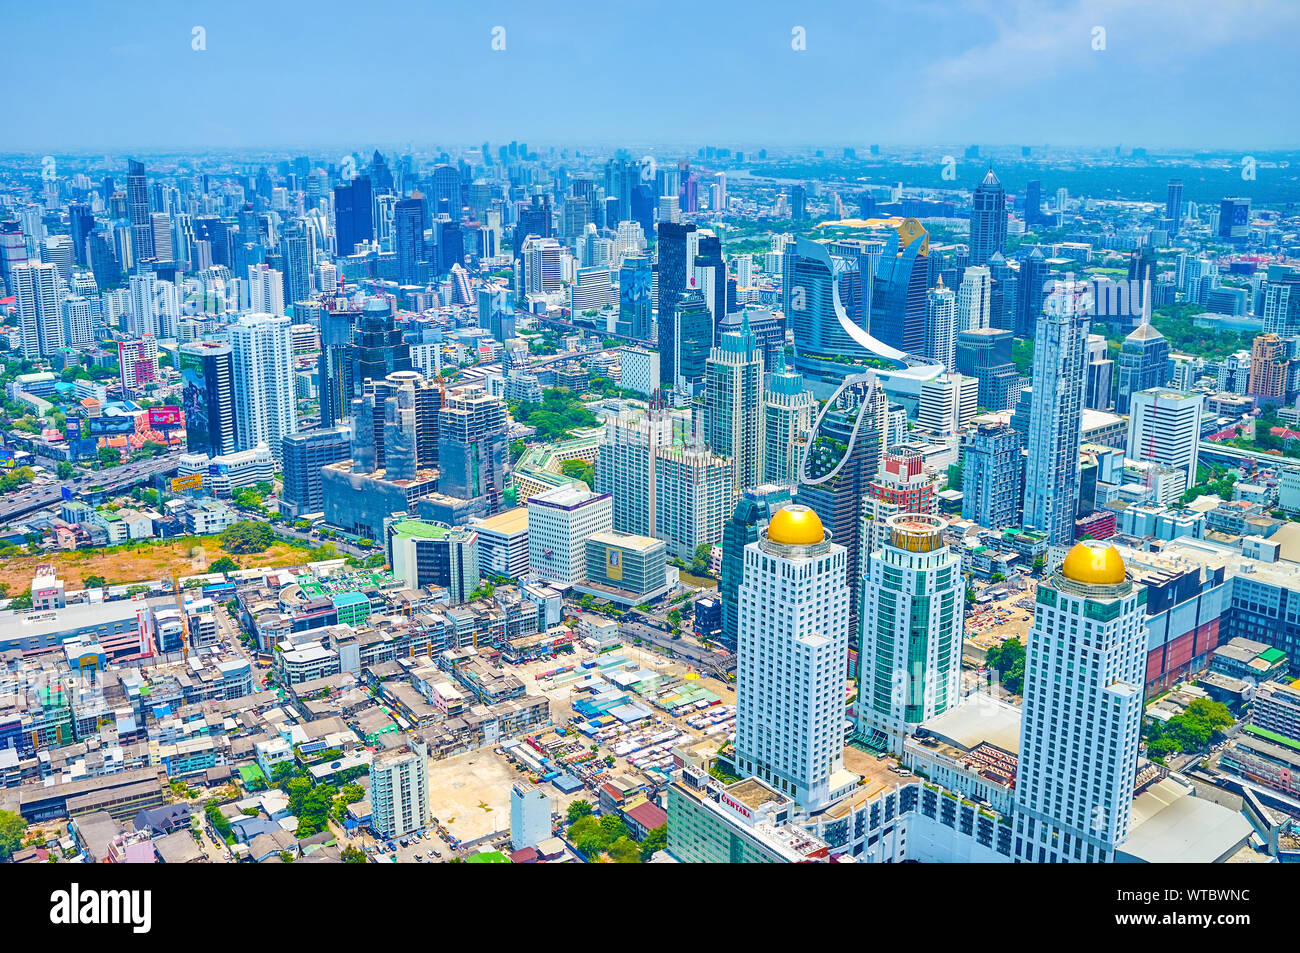 BANGKOK, THAÏLANDE - 24 avril 2019 : Le quartier des affaires de Bangkok offre de nombreux gratte-ciel avec design incroyable, faisant face unique de cit moderne Banque D'Images